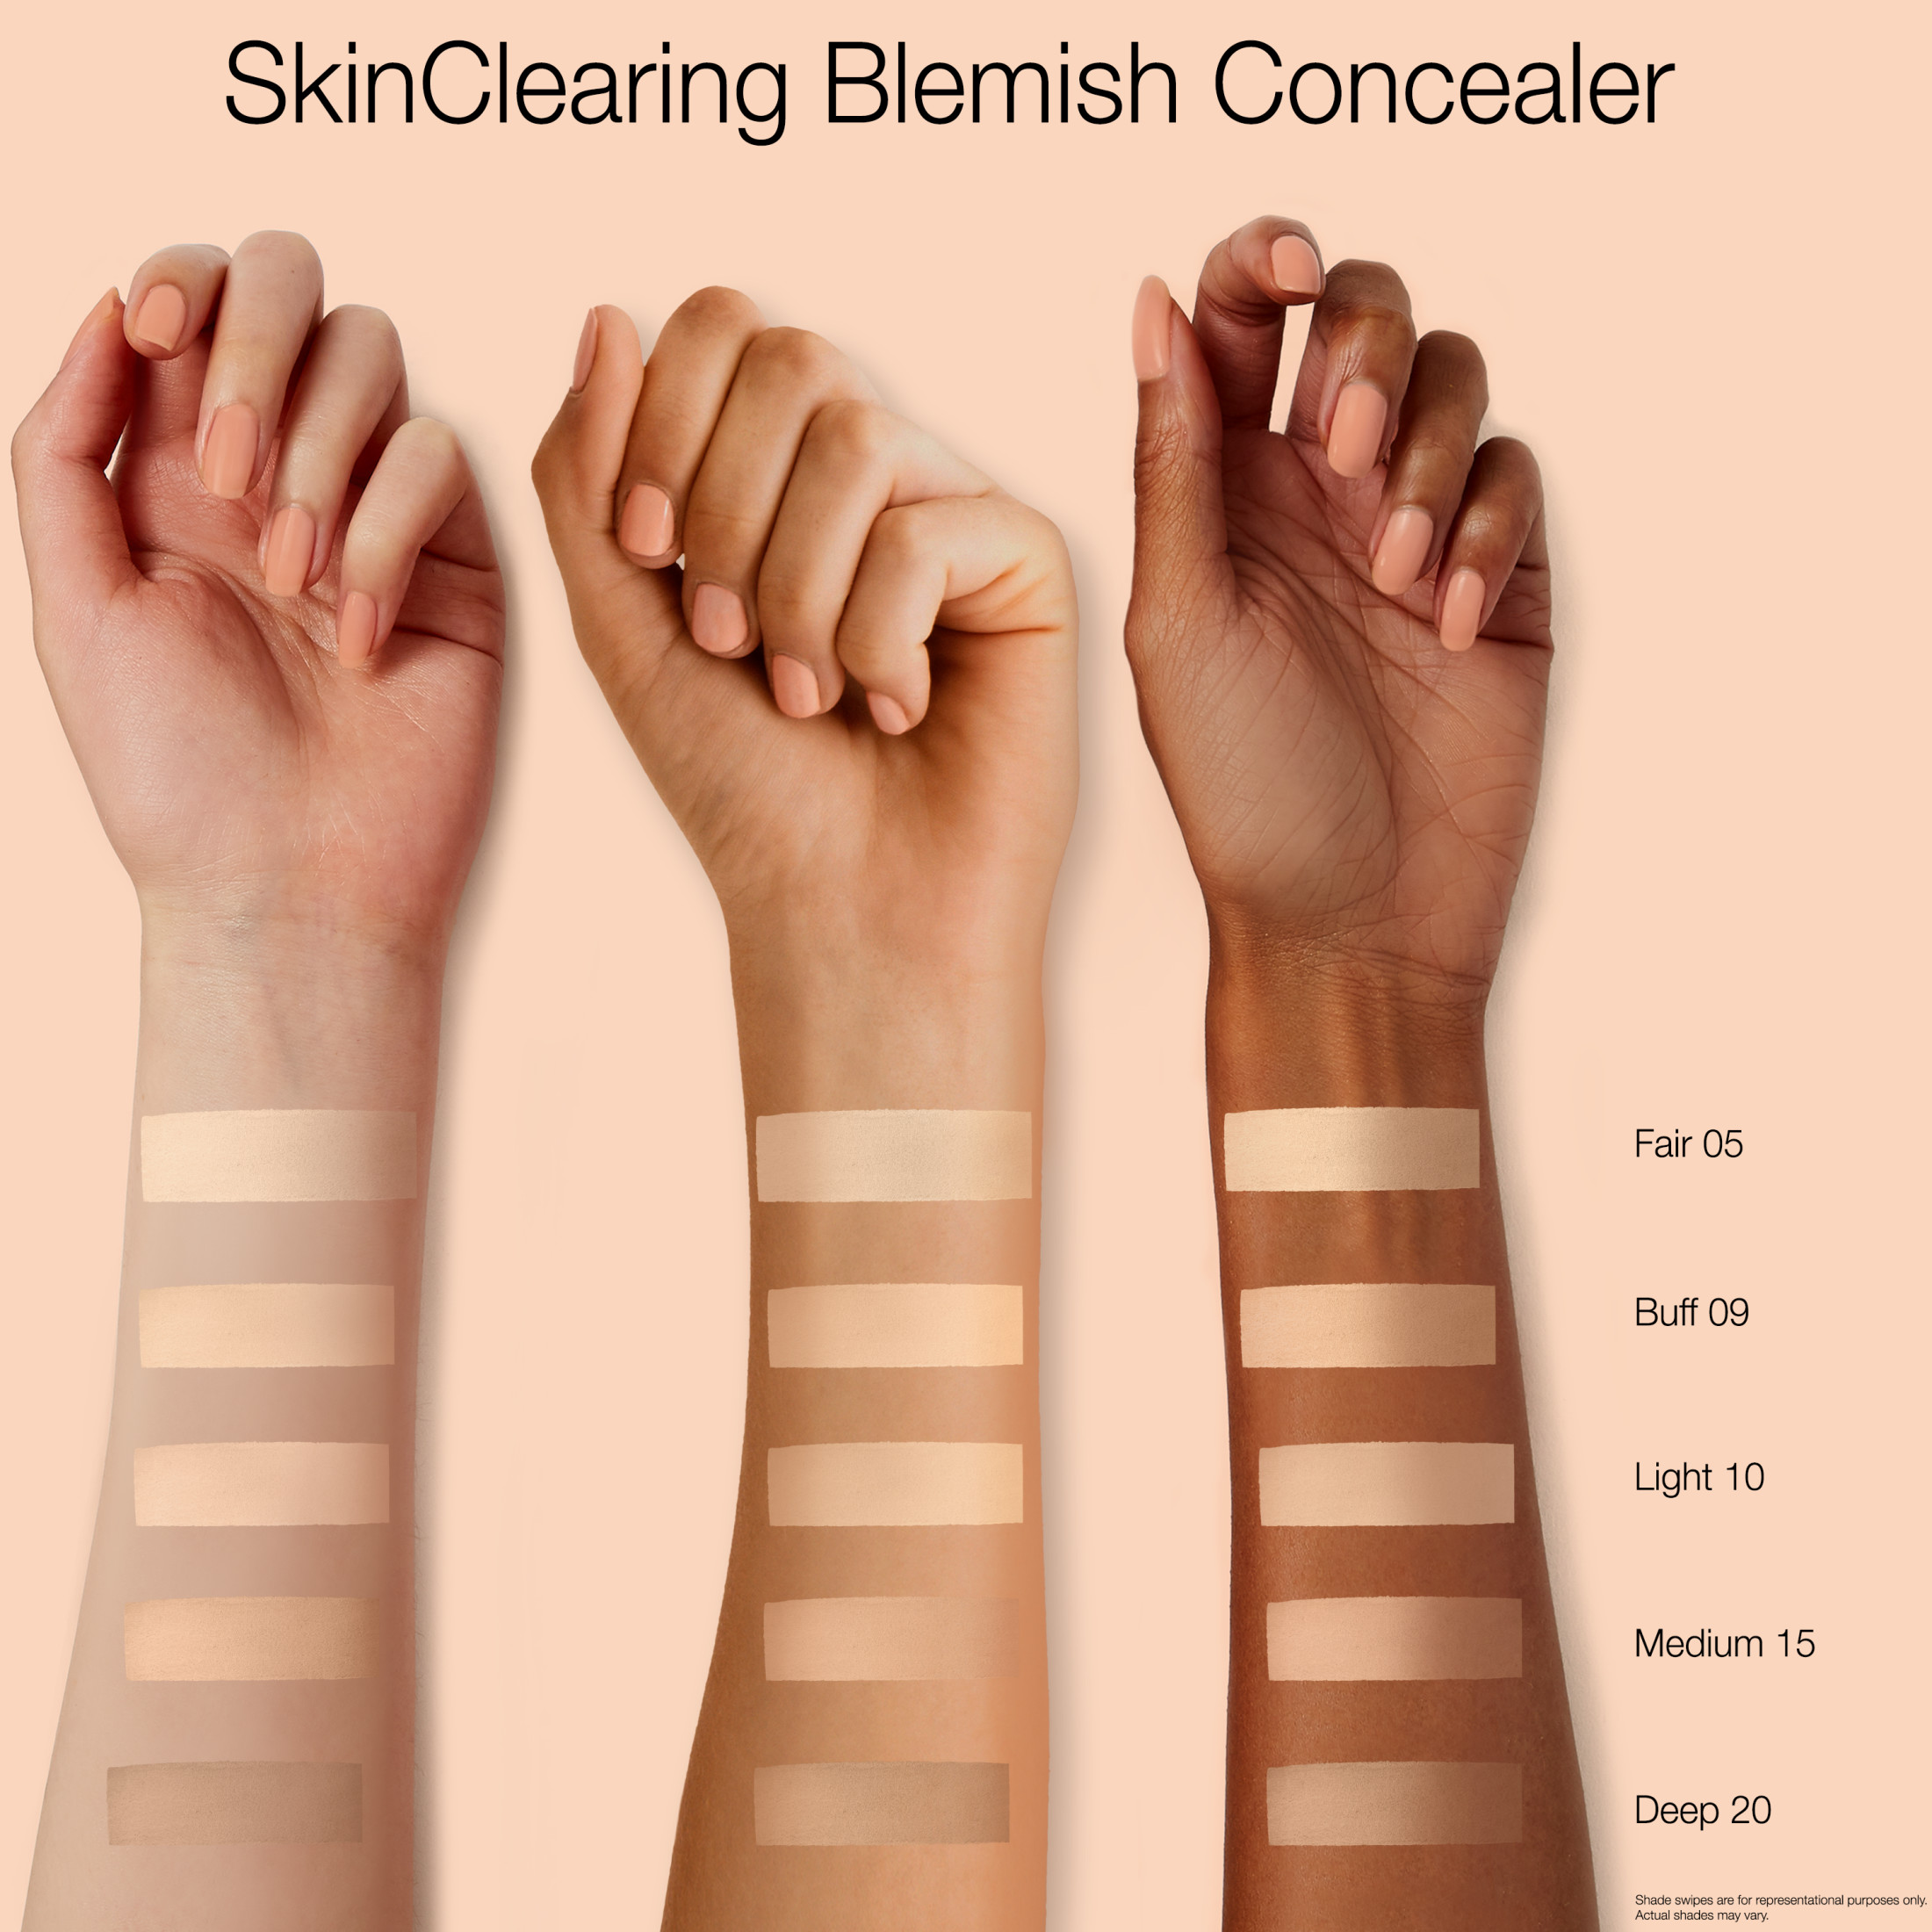 Neutrogena SkinClearing Blemish Concealer Makeup, Light 10,.05 oz - image 3 of 8